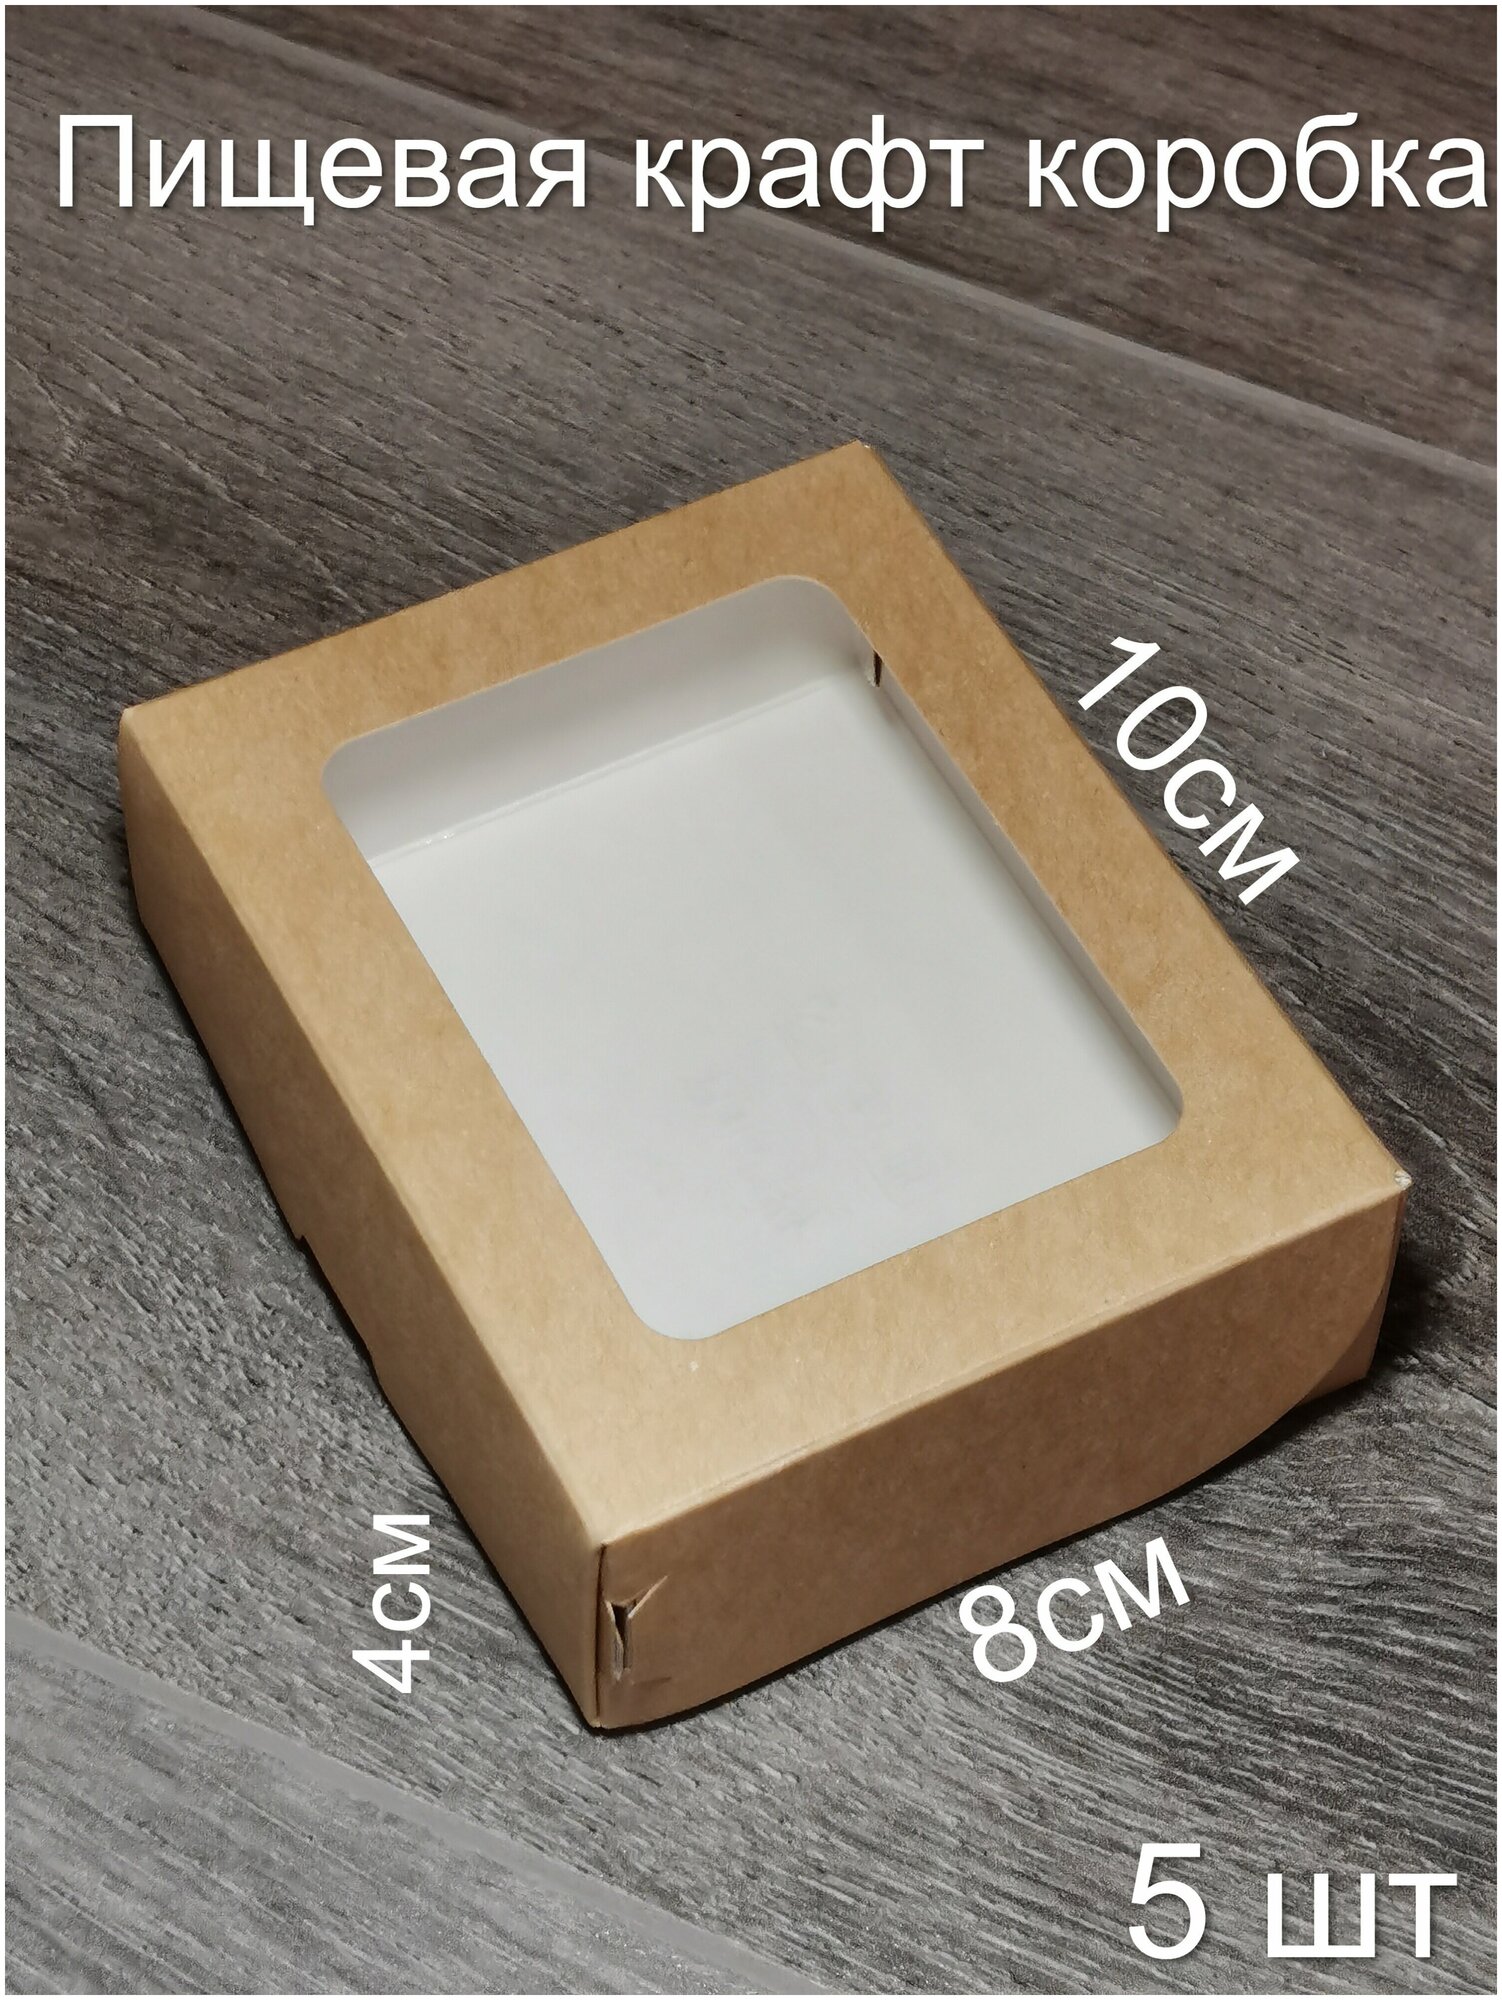 Крафт коробка с окном/ коробка для упаковки подарков, кондитерских изделий/ 10*8*4см 300мл